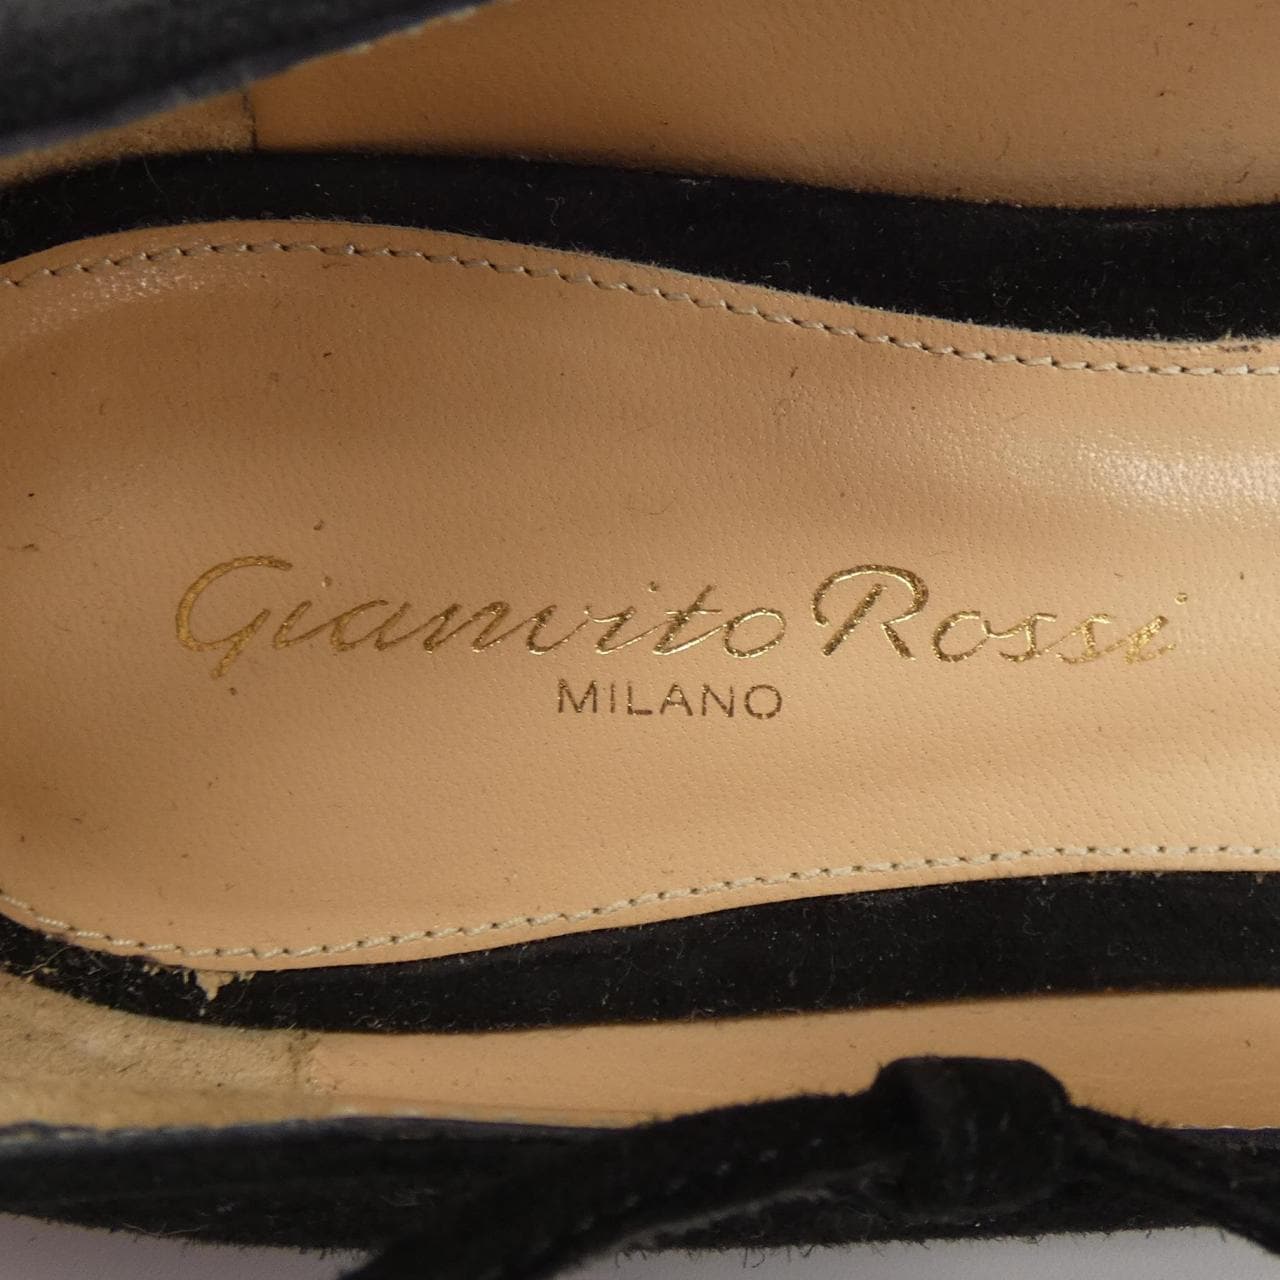 Gianvito Rossi GIANVITO ROSSI shoes